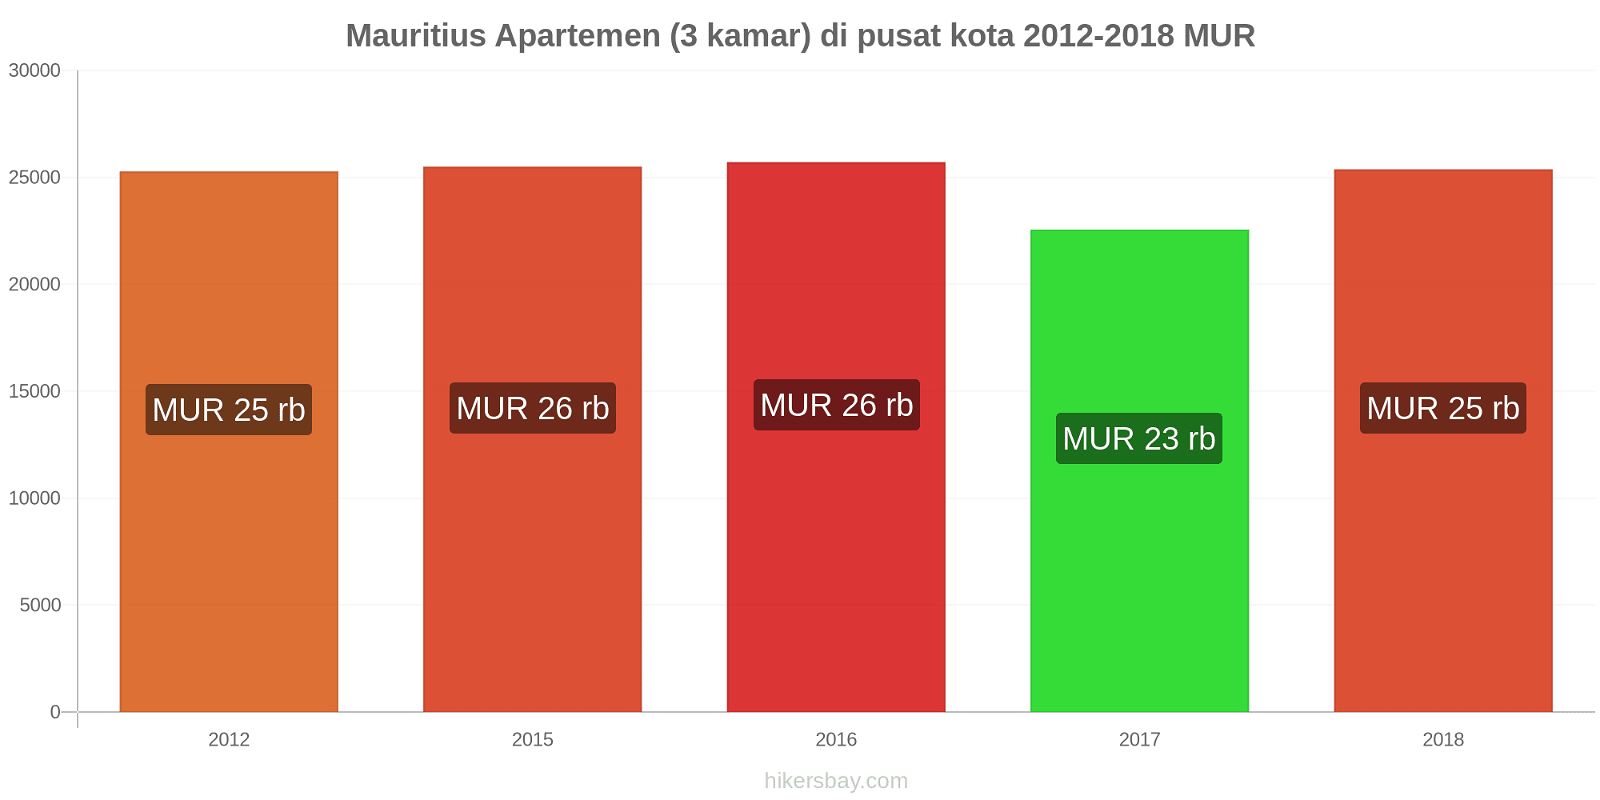 Mauritius perubahan harga Apartemen (3 kamar) di pusat kota hikersbay.com